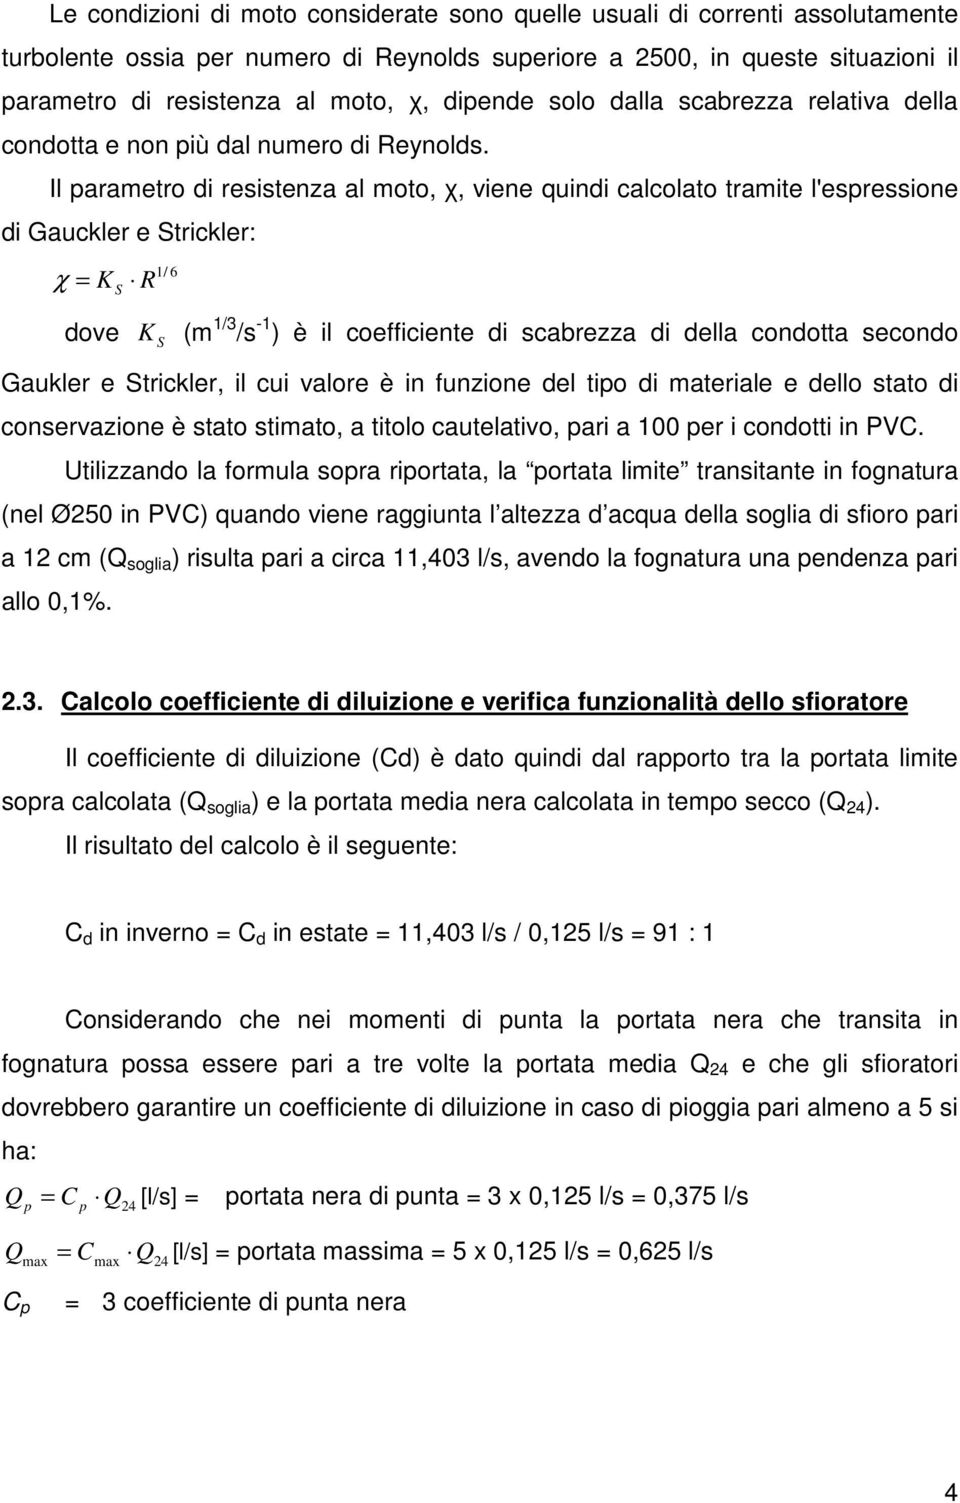 Il parametro di resistenza al moto, χ, viene quindi calcolato tramite l'espressione di Gauckler e Strickler: 1/ 6 χ = K S R dove K S (m 1/3 /s -1 ) è il coefficiente di scabrezza di della condotta